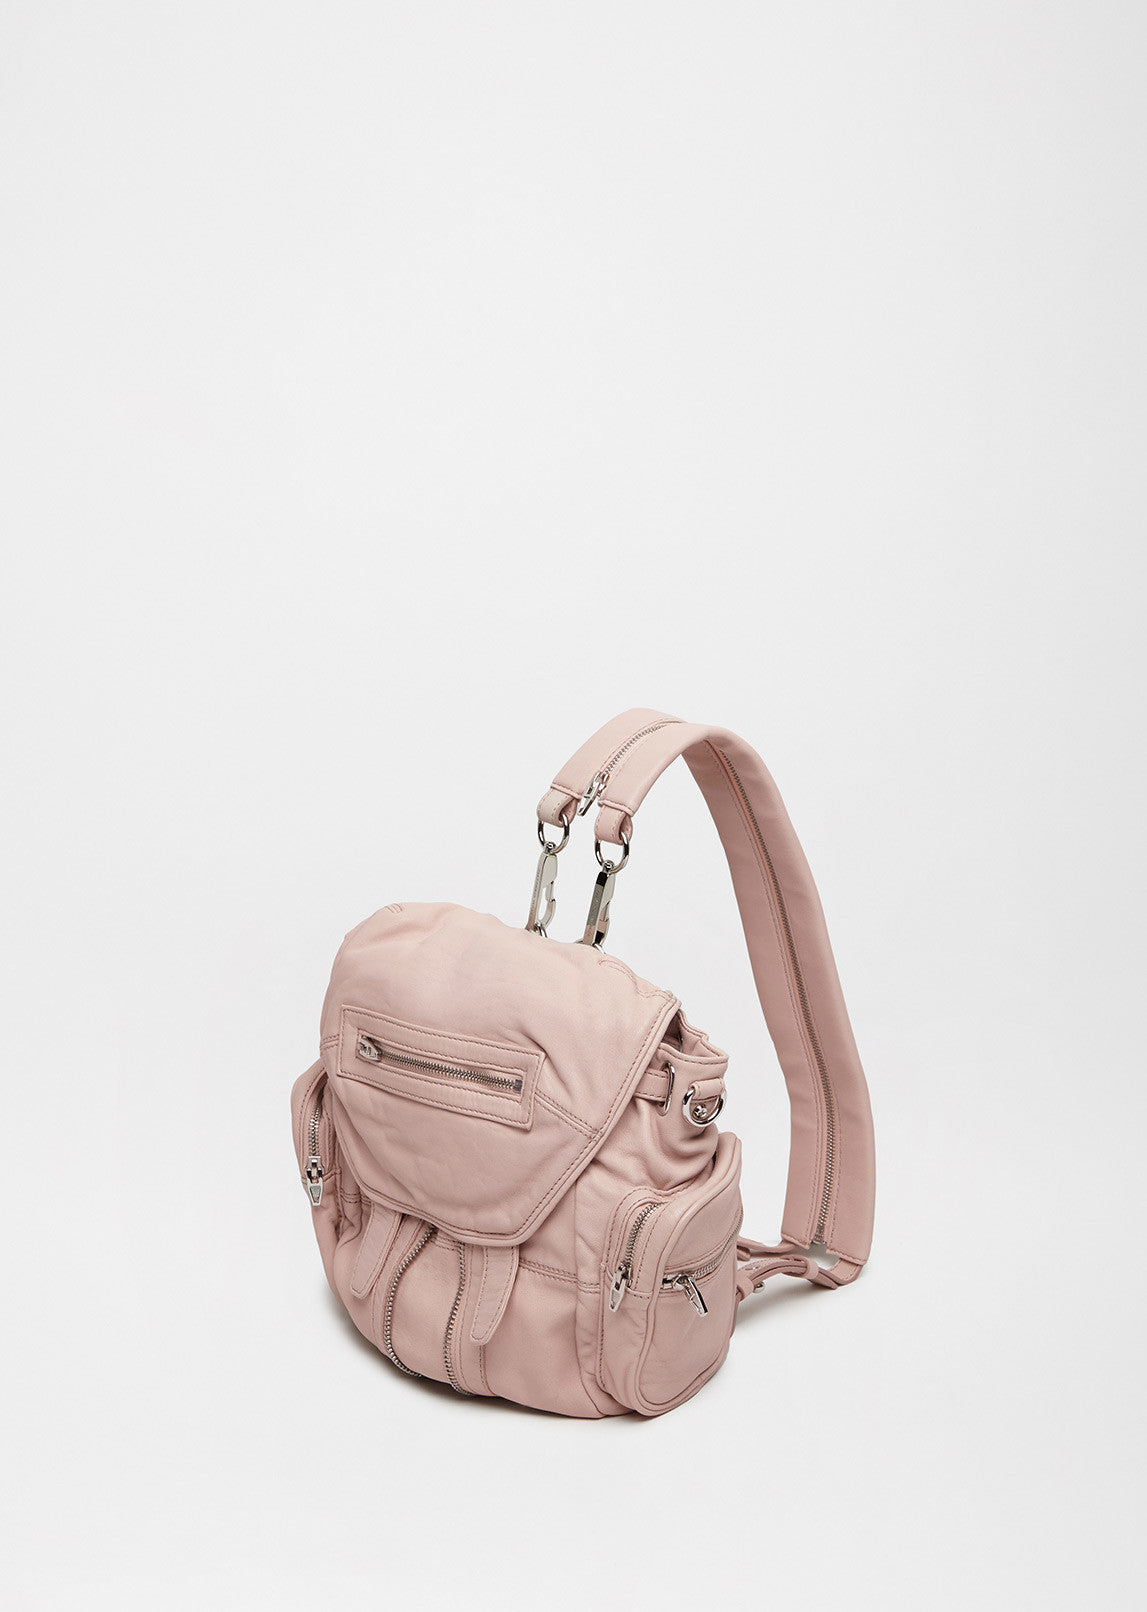 Celine Backpack – In Wang Vintage